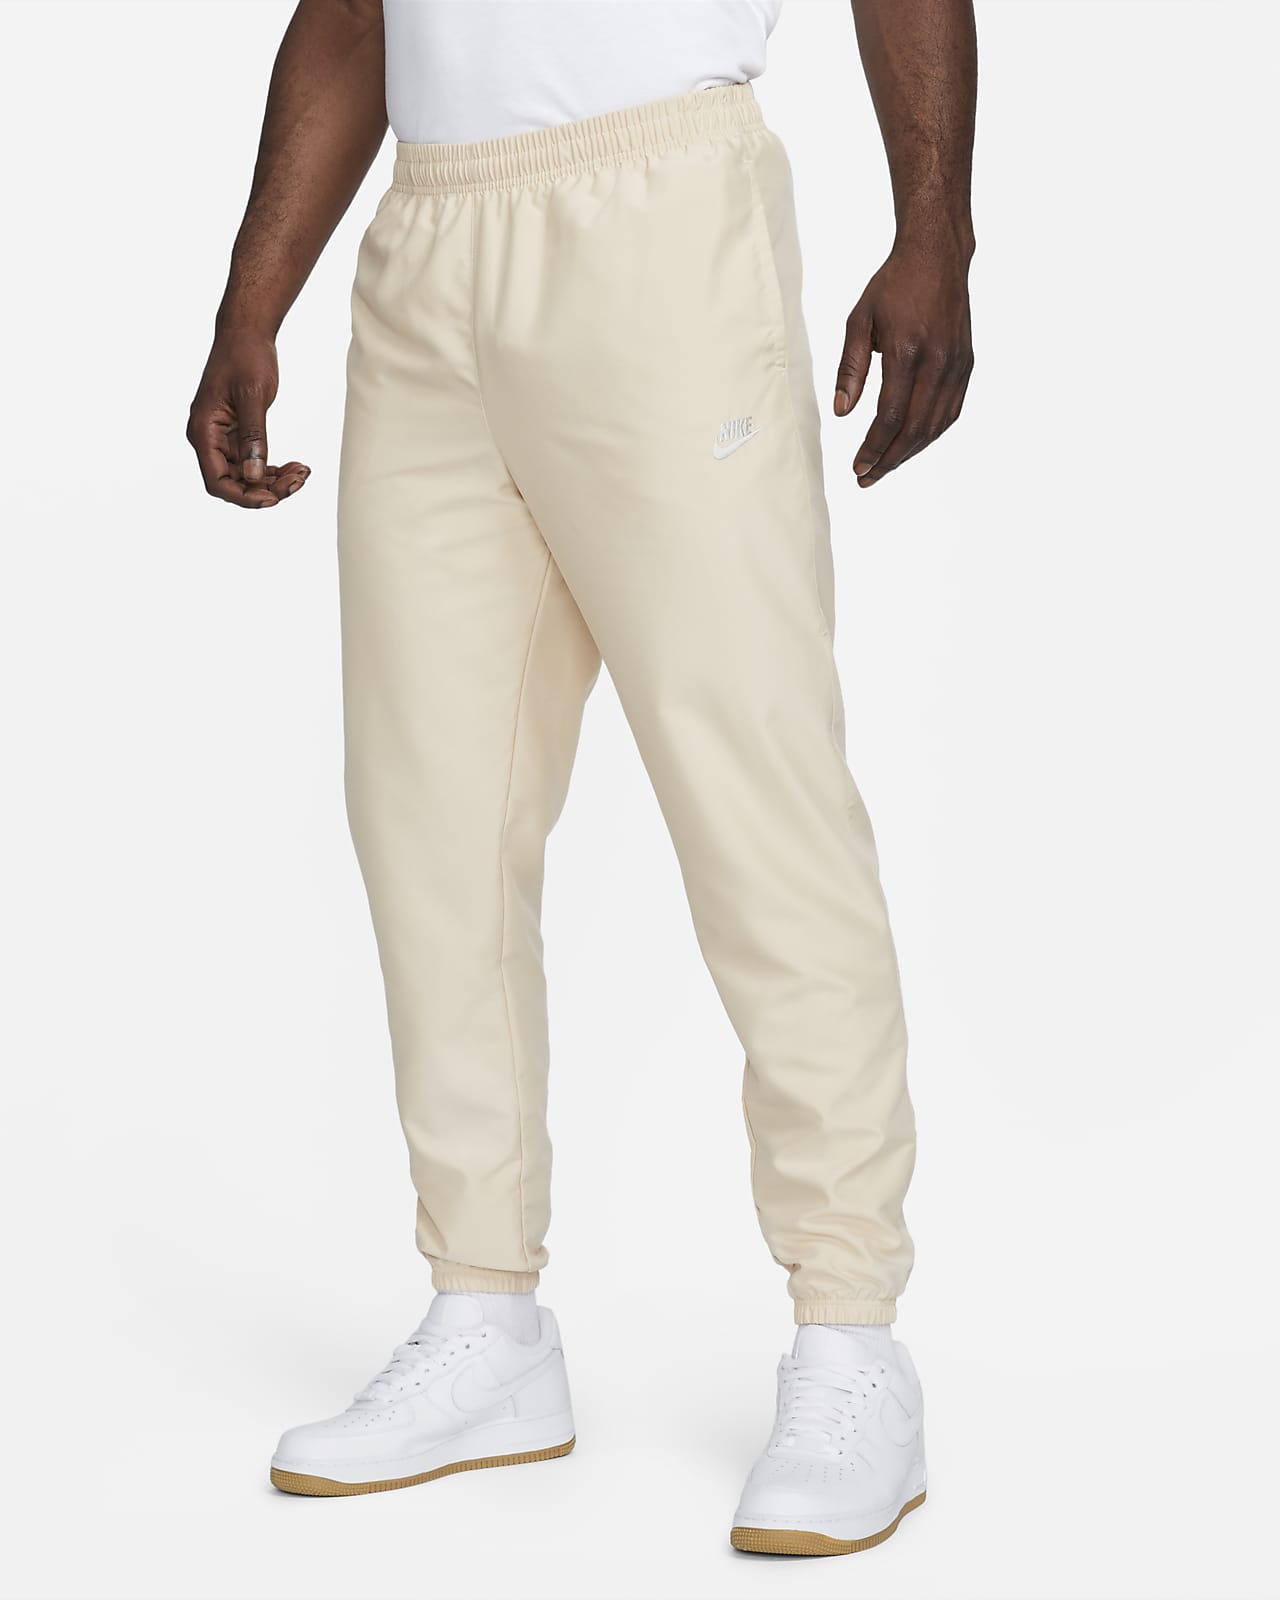 Tengo una clase de ingles puerta Ewell Pantaloni in tessuto Nike Sportswear – Uomo. Nike IT